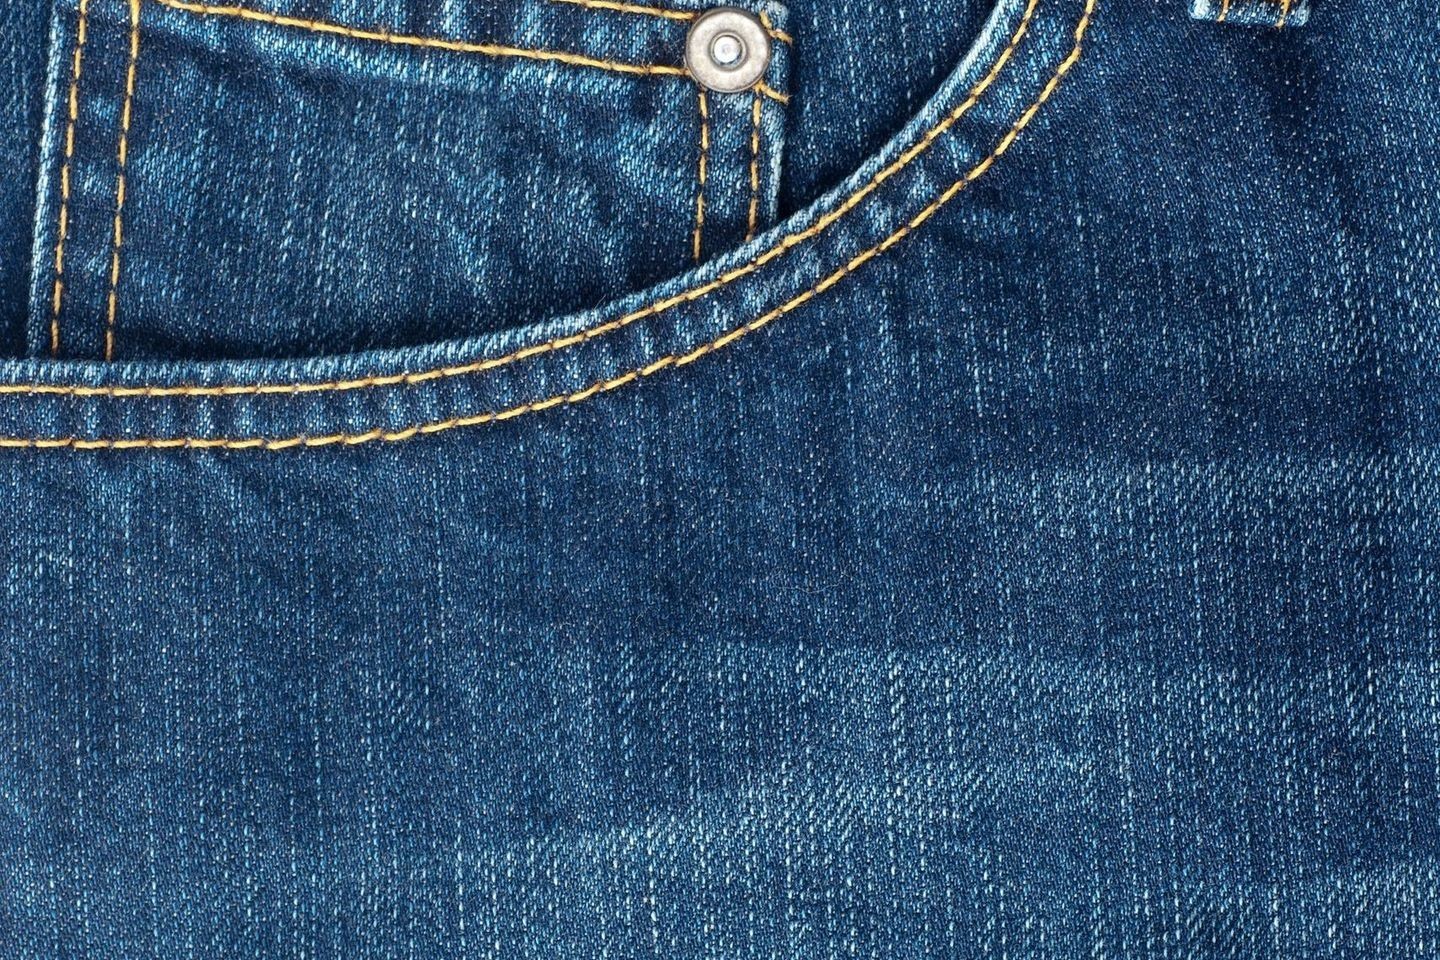 G.Drukteinis įminė mįslę, kam gi skirta mažoji džinsų kišenėlė.<br>„123rf.com“ nuotr.